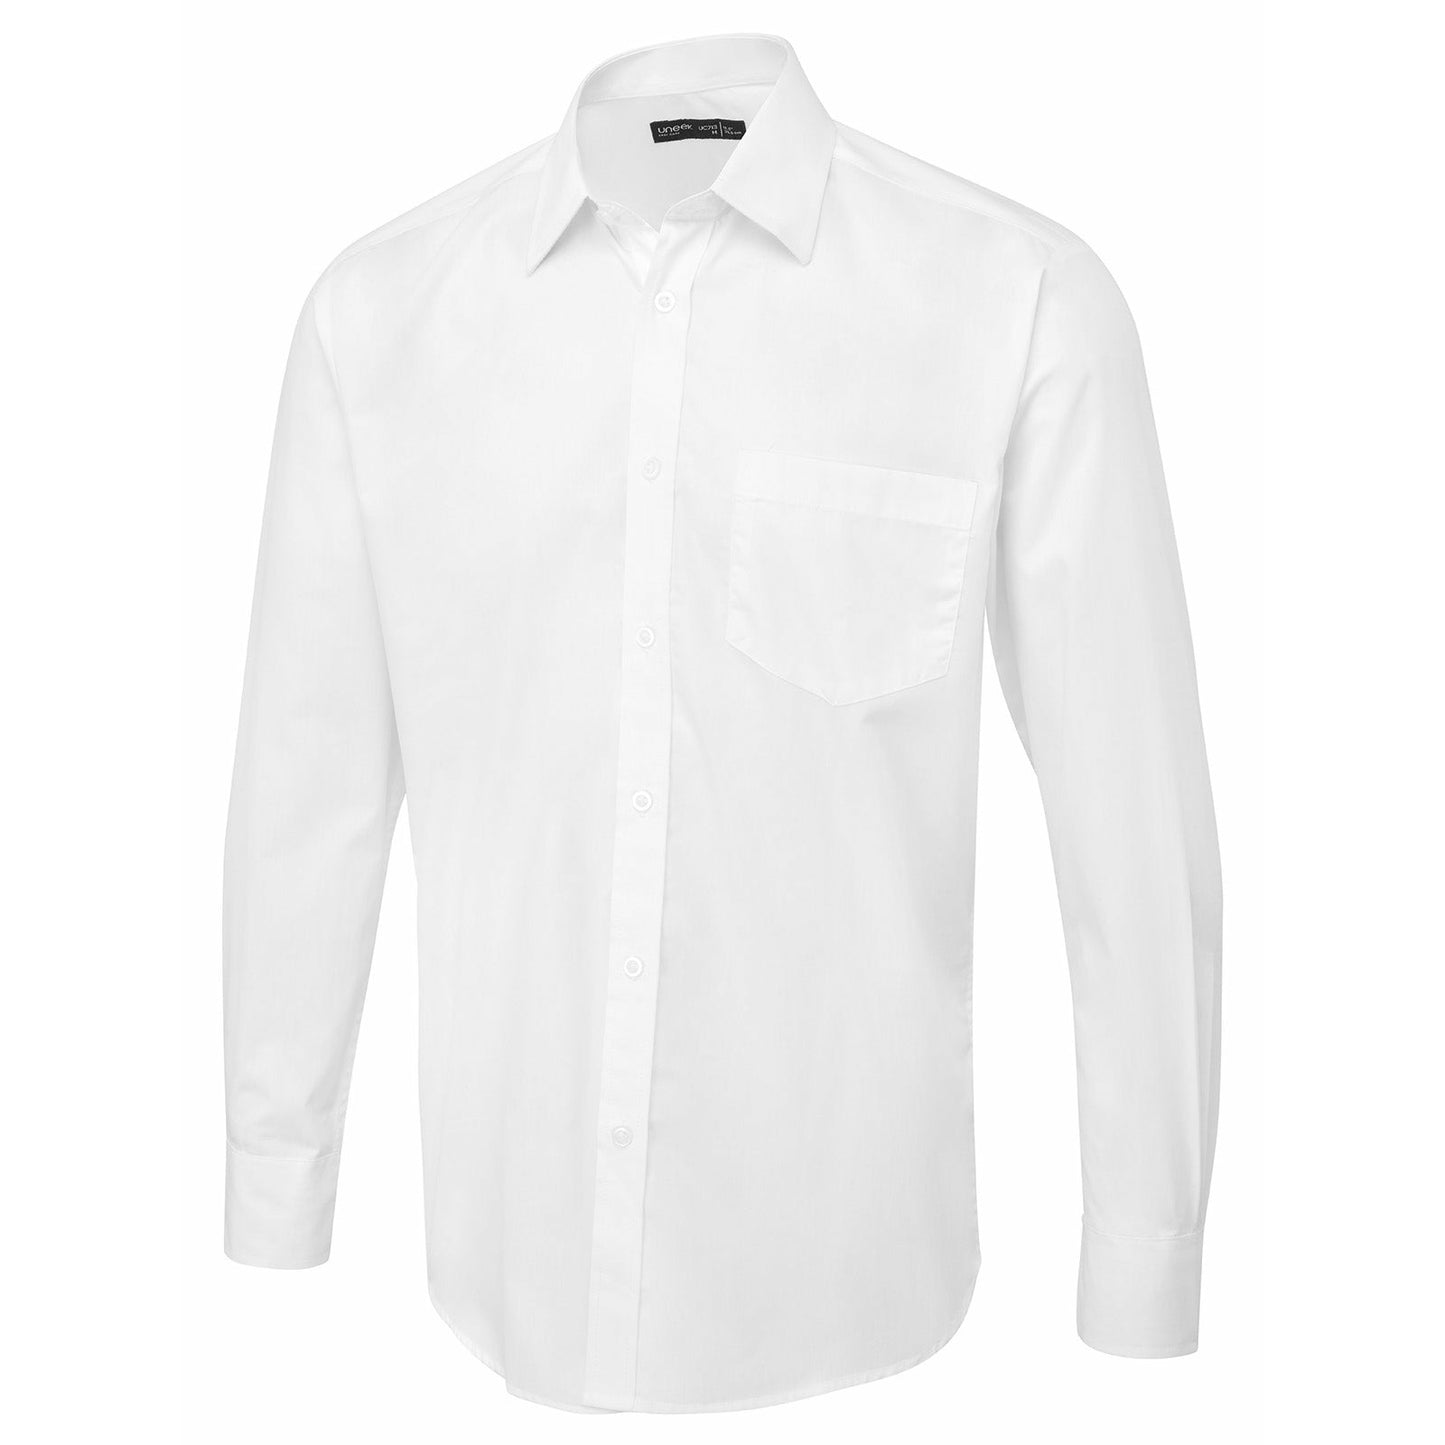 Men's Long Sleeve Poplin Shirt - White